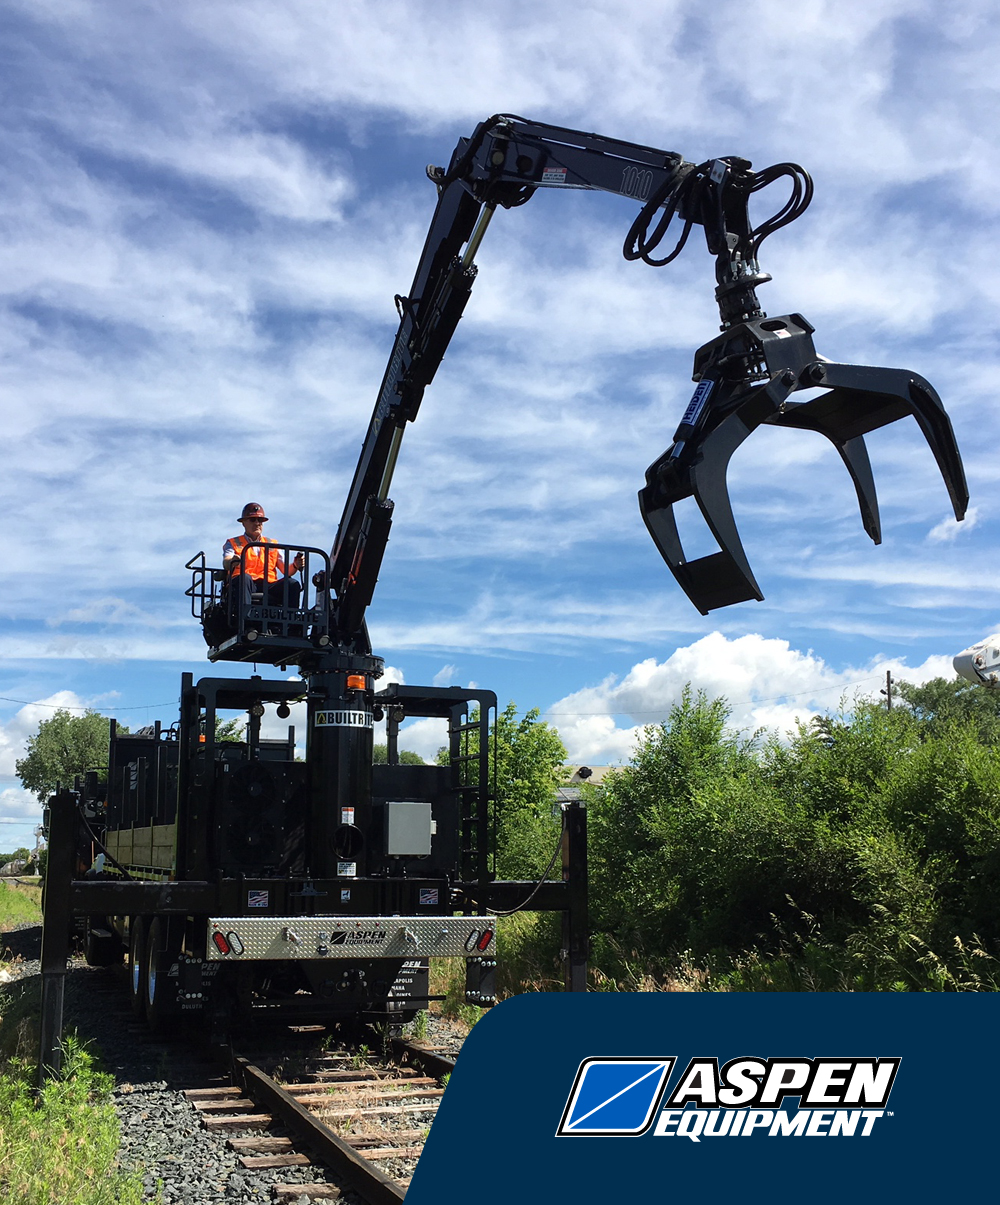 Aspen Equipment Returns to Railway Interchange